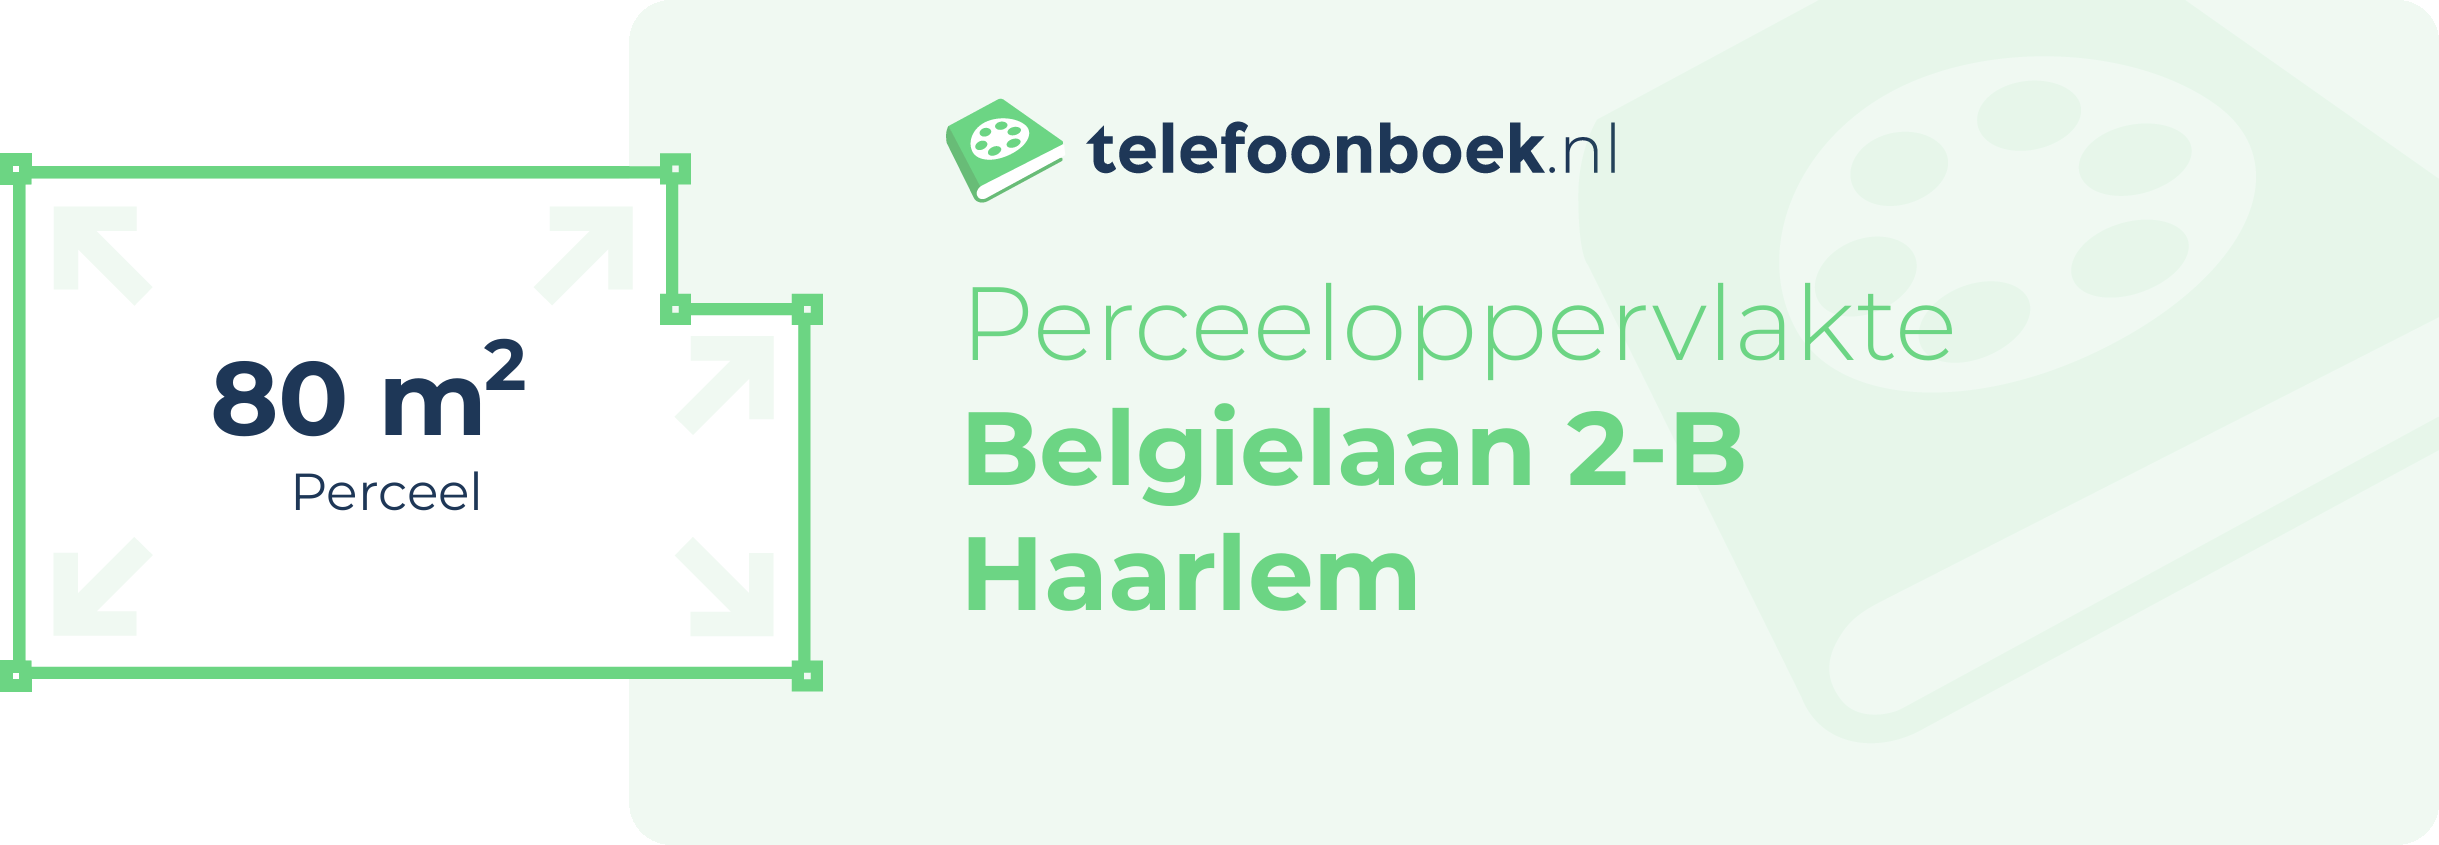 Perceeloppervlakte Belgielaan 2-B Haarlem